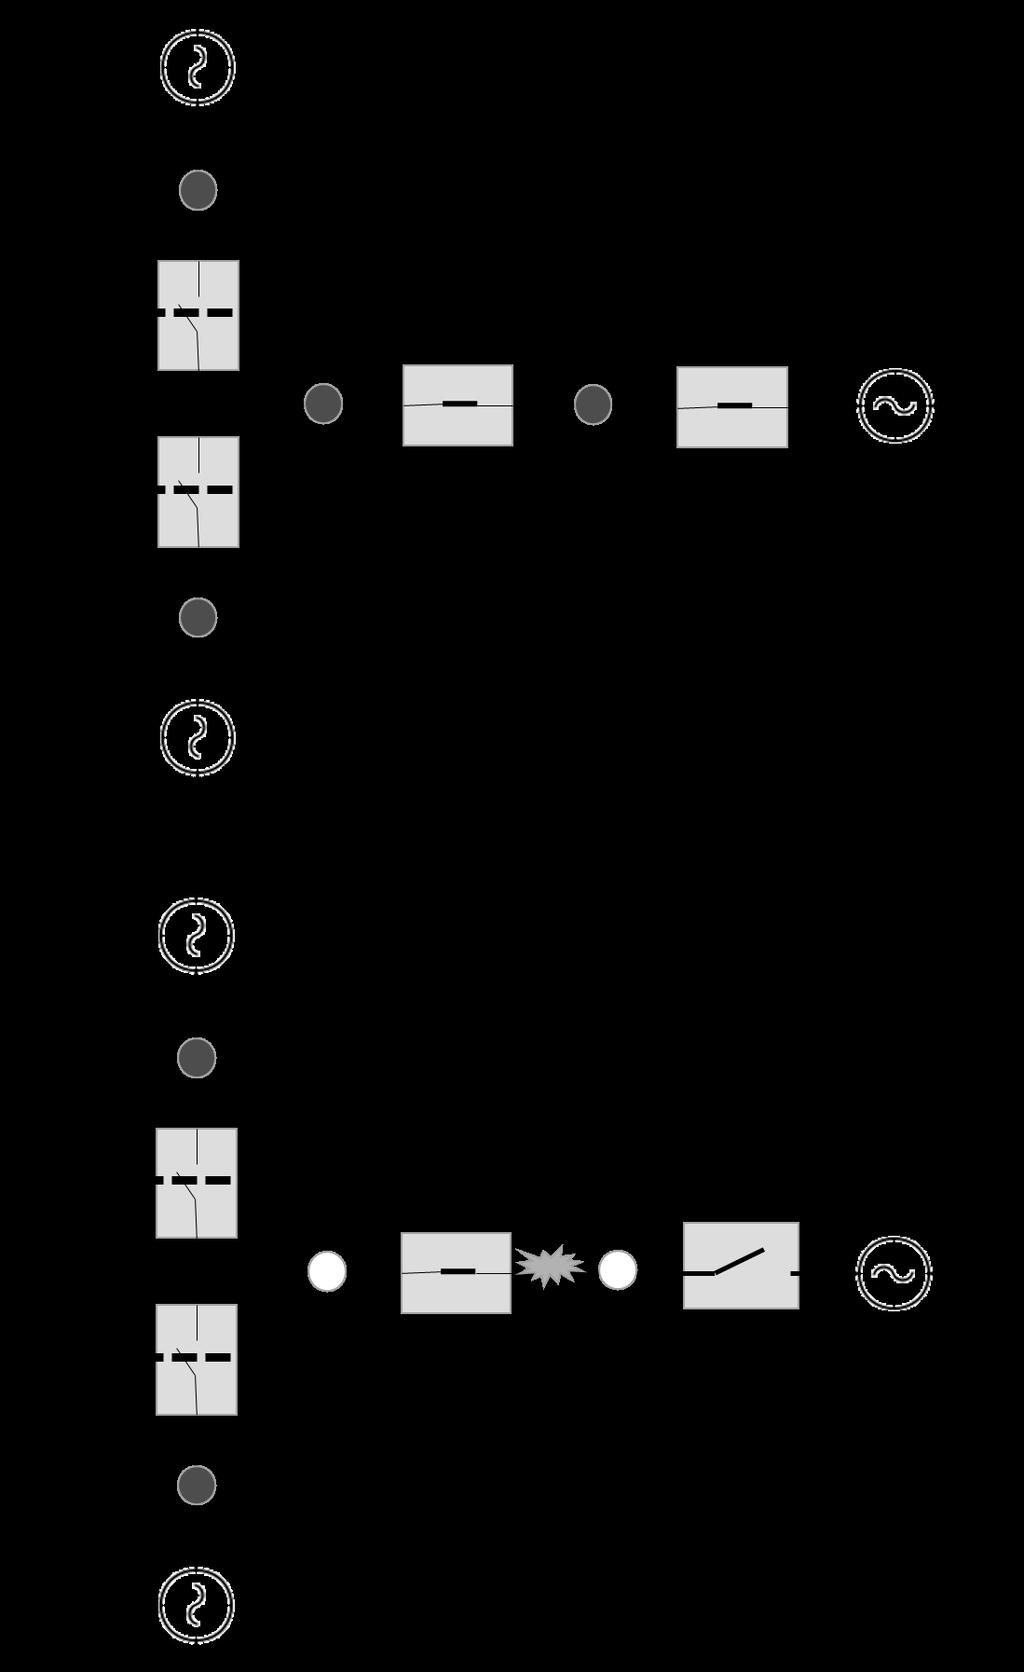 Figur 3: Alternativ FLISR-konfigurasjon Ringnettet er pedagogisk for å forklare FLISR, men konseptet er like anvendelig på